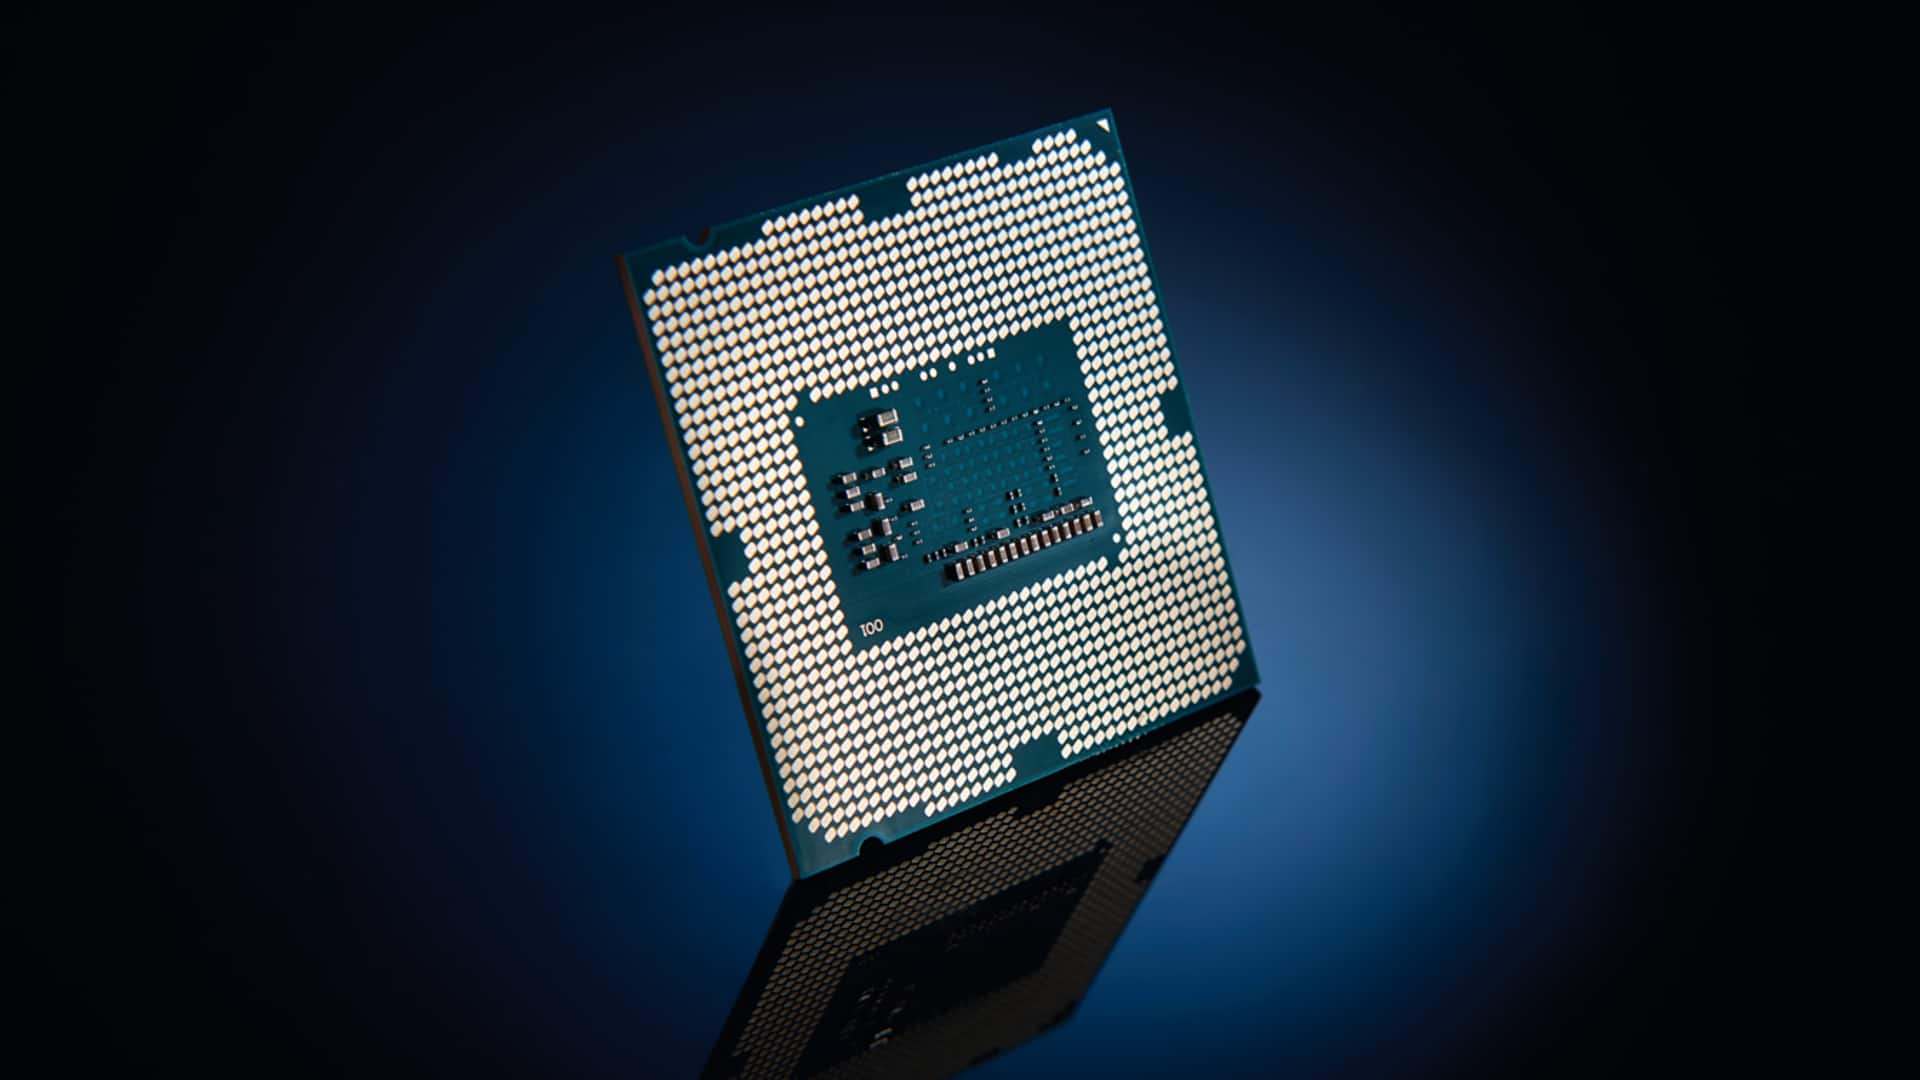 В процессорах Intel поколения Skylake и Kaby Lake обнаружена новая уязвимость PortSmash